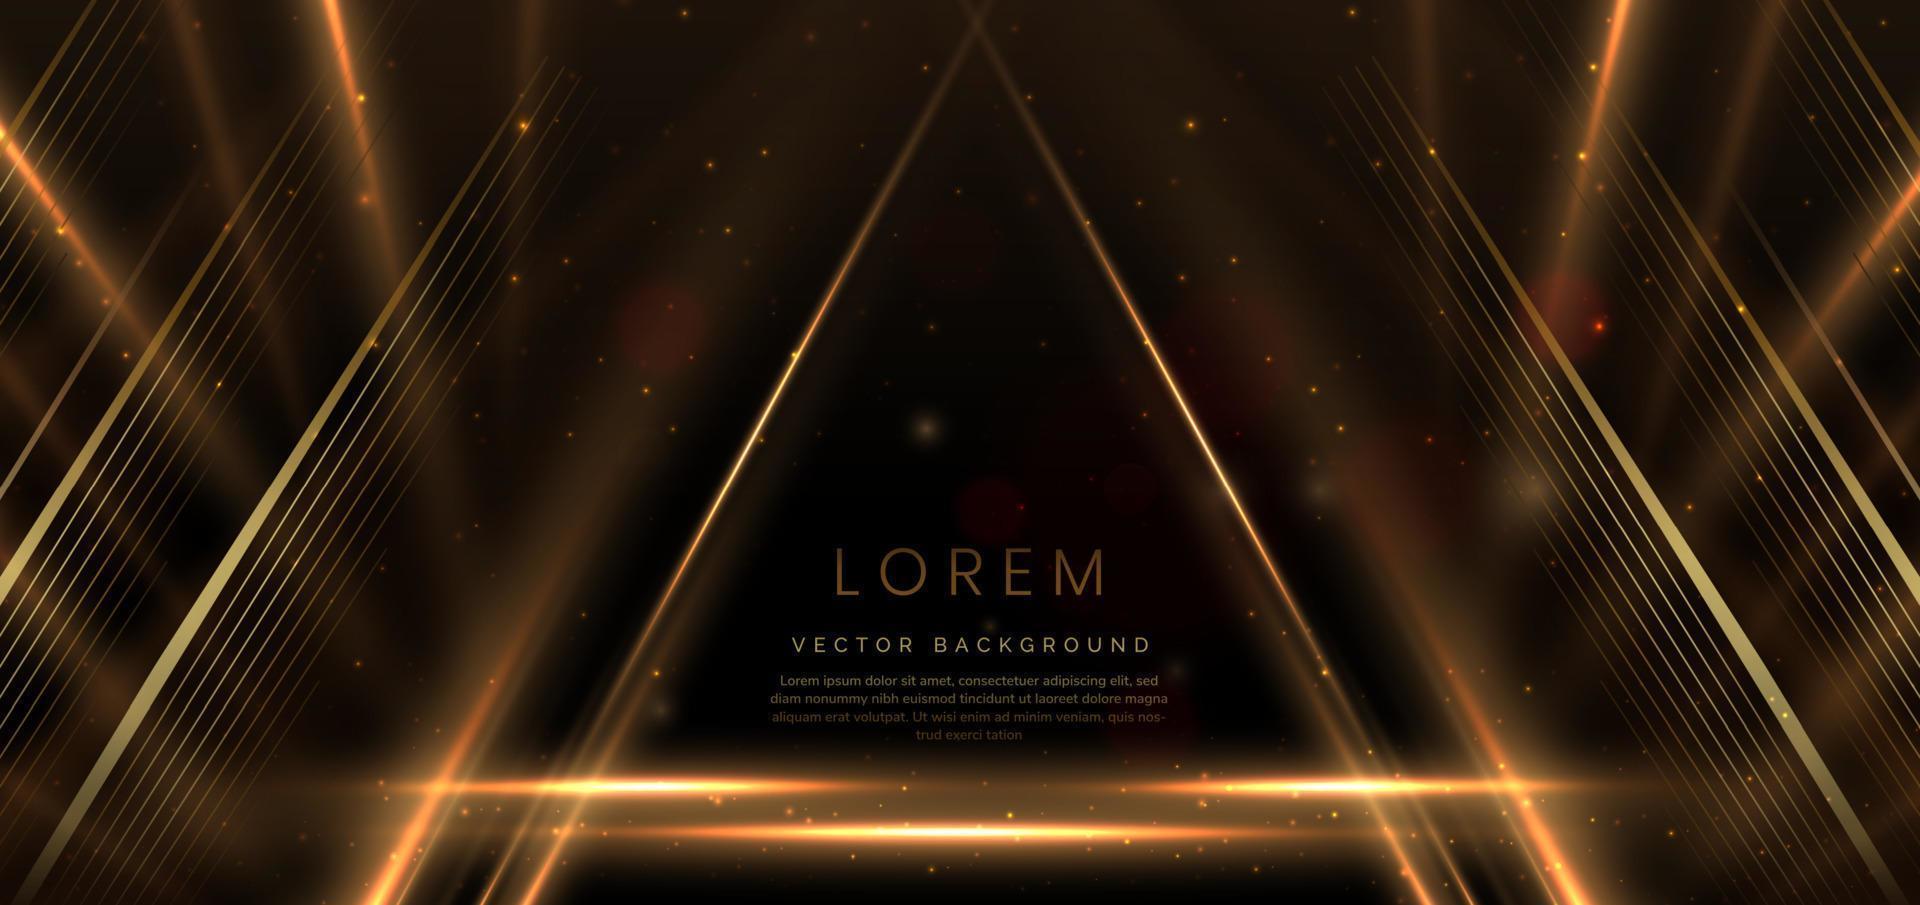 elegantes goldenes Dreieck, das mit Lichteffekten auf schwarzem Hintergrund leuchtet. Vorlage Premium-Award-Design. vektor